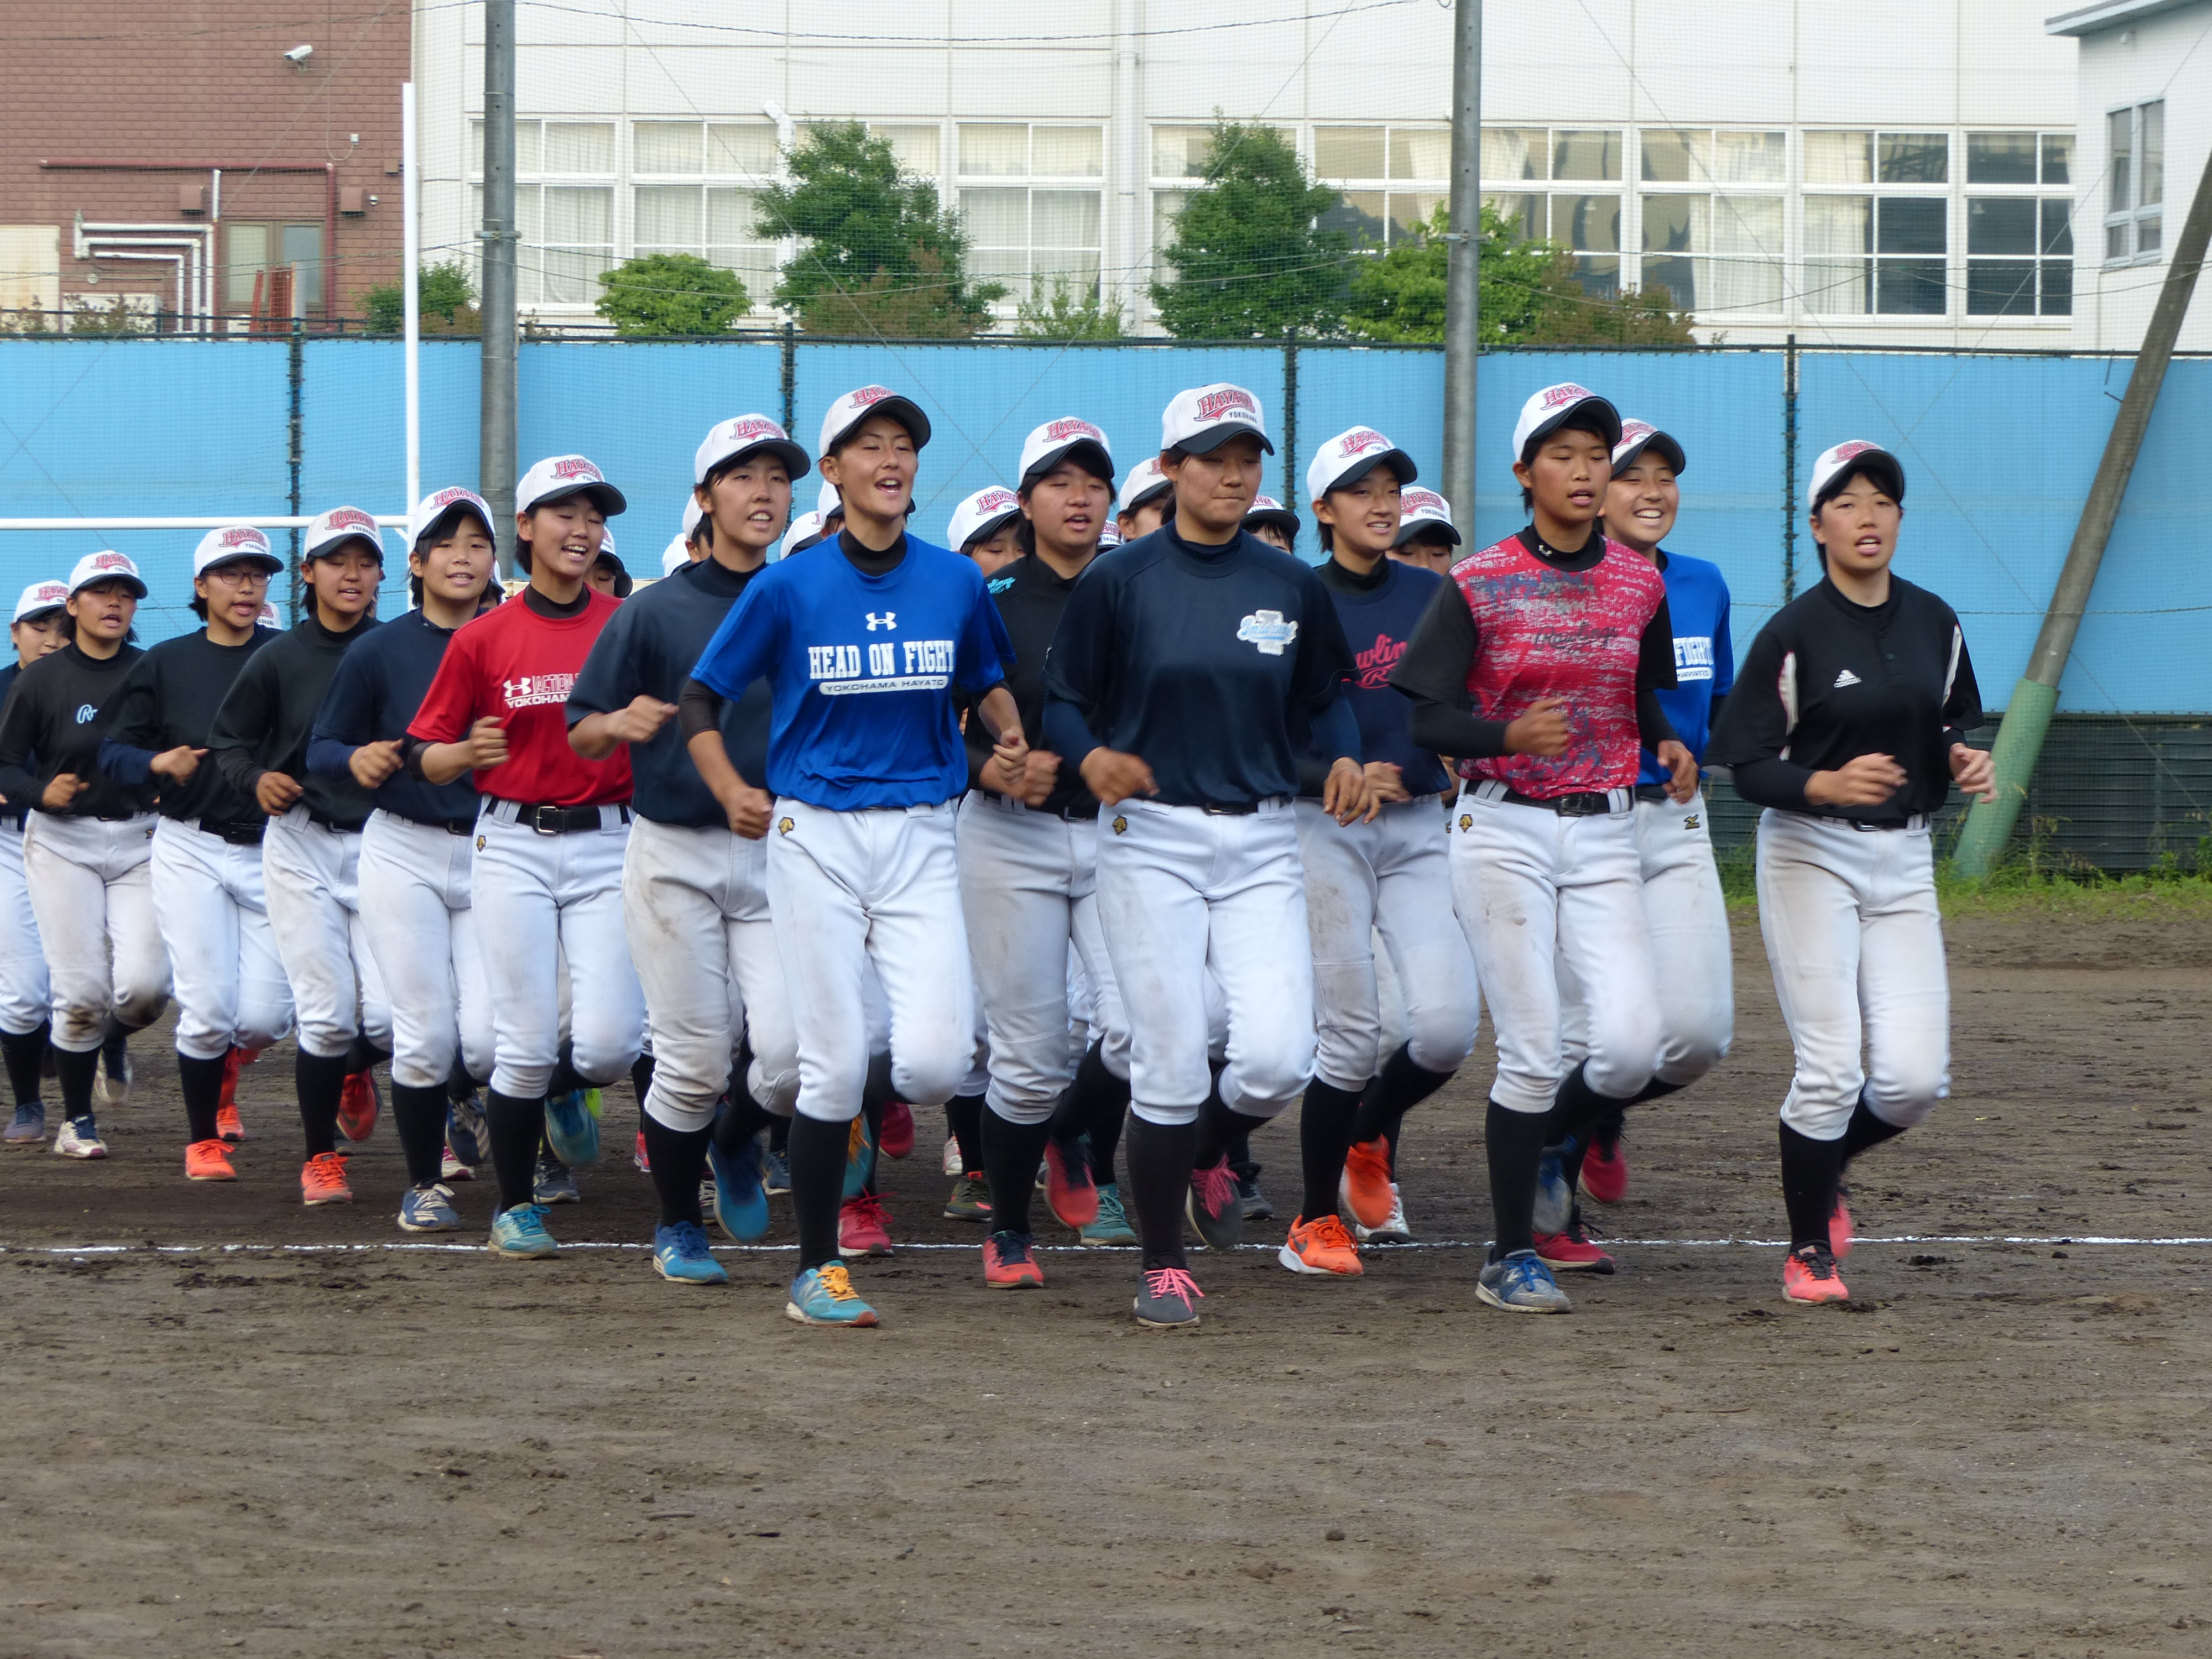 一緒に頑張れて良かった と思える仲間を作って欲しい 目指すは昨年上回る日本一 横浜隼人女子野球部訪問 野球女子 Vol 12 野球女子 Baseball Gate